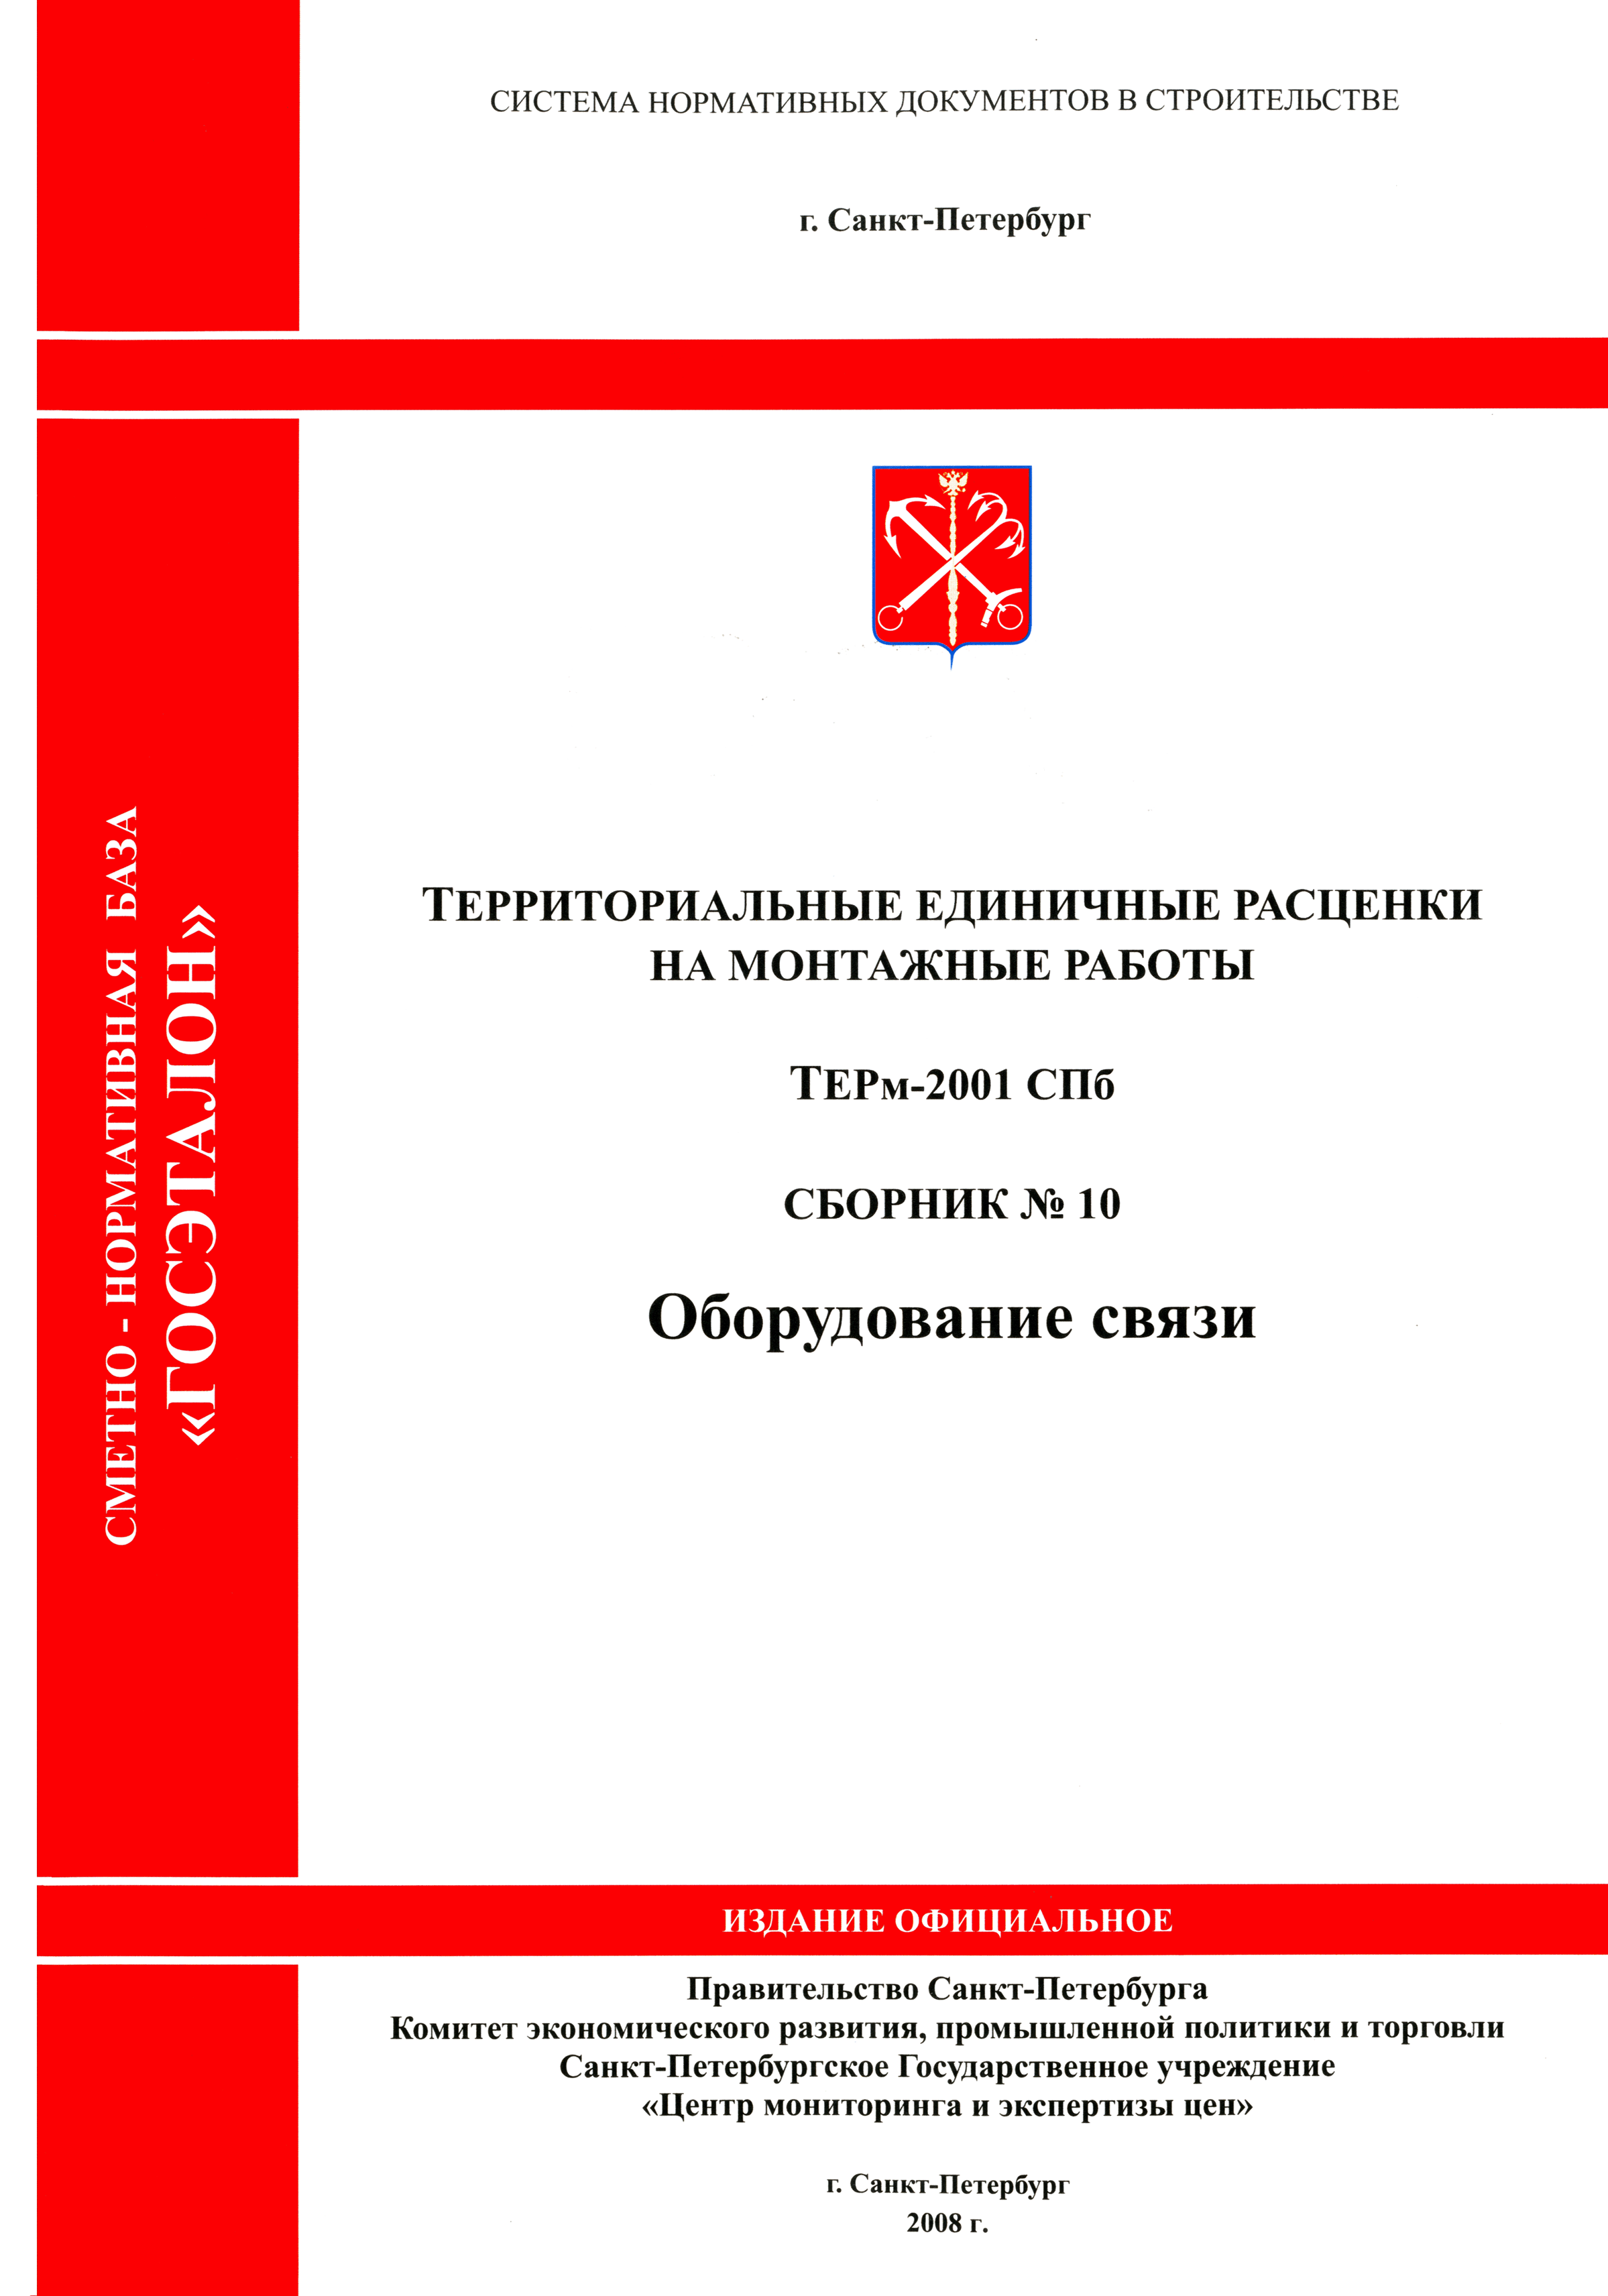 ТЕРм 2001-10 СПб